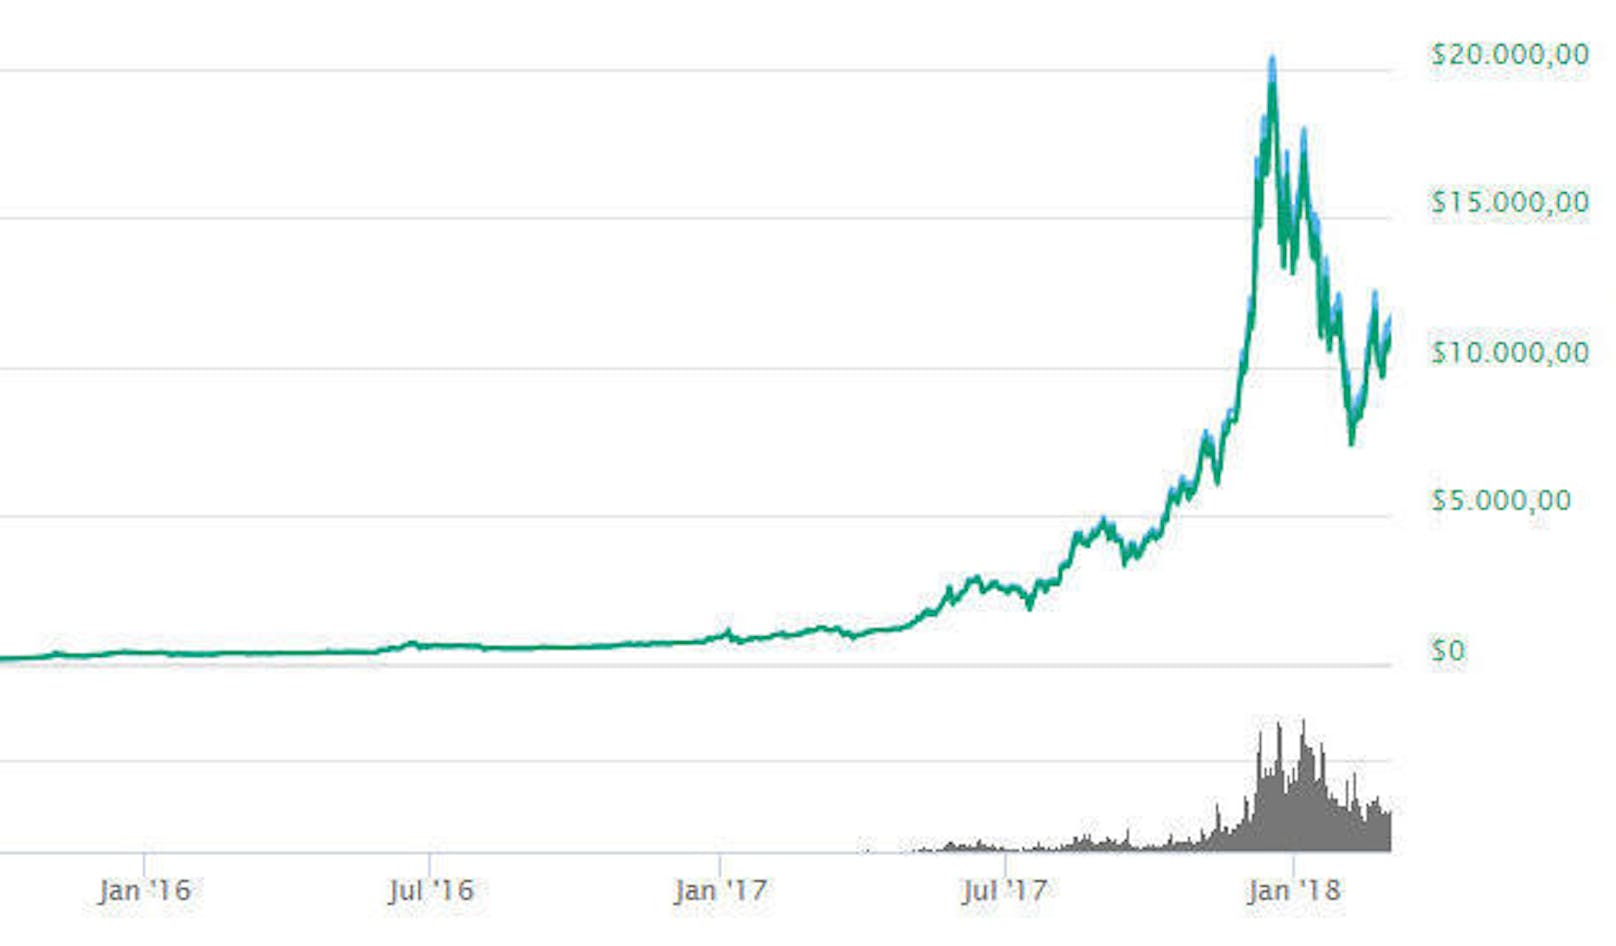 Dies gelang ihm dank dem Preisanstieg der virtuellen Währungen. Ende des letzten Jahres legte etwa der Bitcoin ein wahres Kursrally hin. Der Kurs explodierte, bevor er zu Beginn des neuen Jahres wieder stark sank und sich um 10.000 Dollar einpendelte.